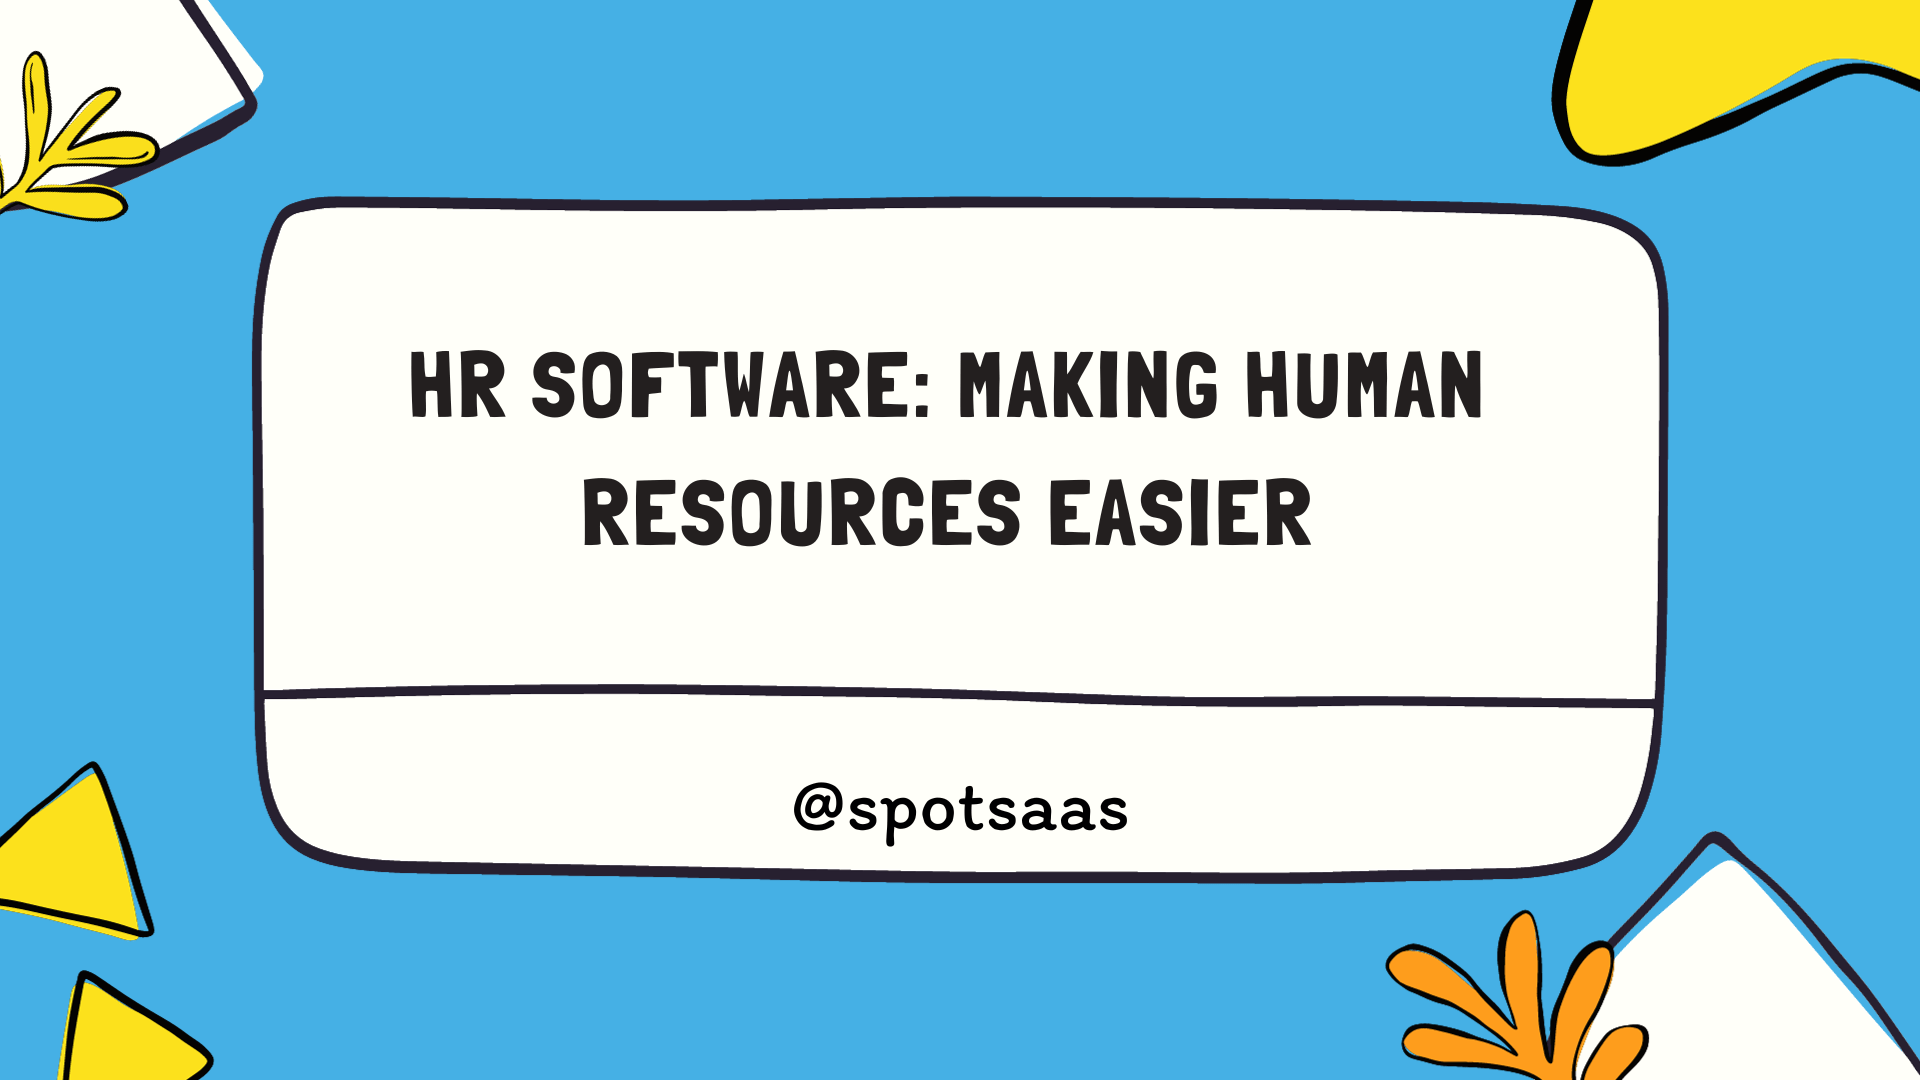 HR software